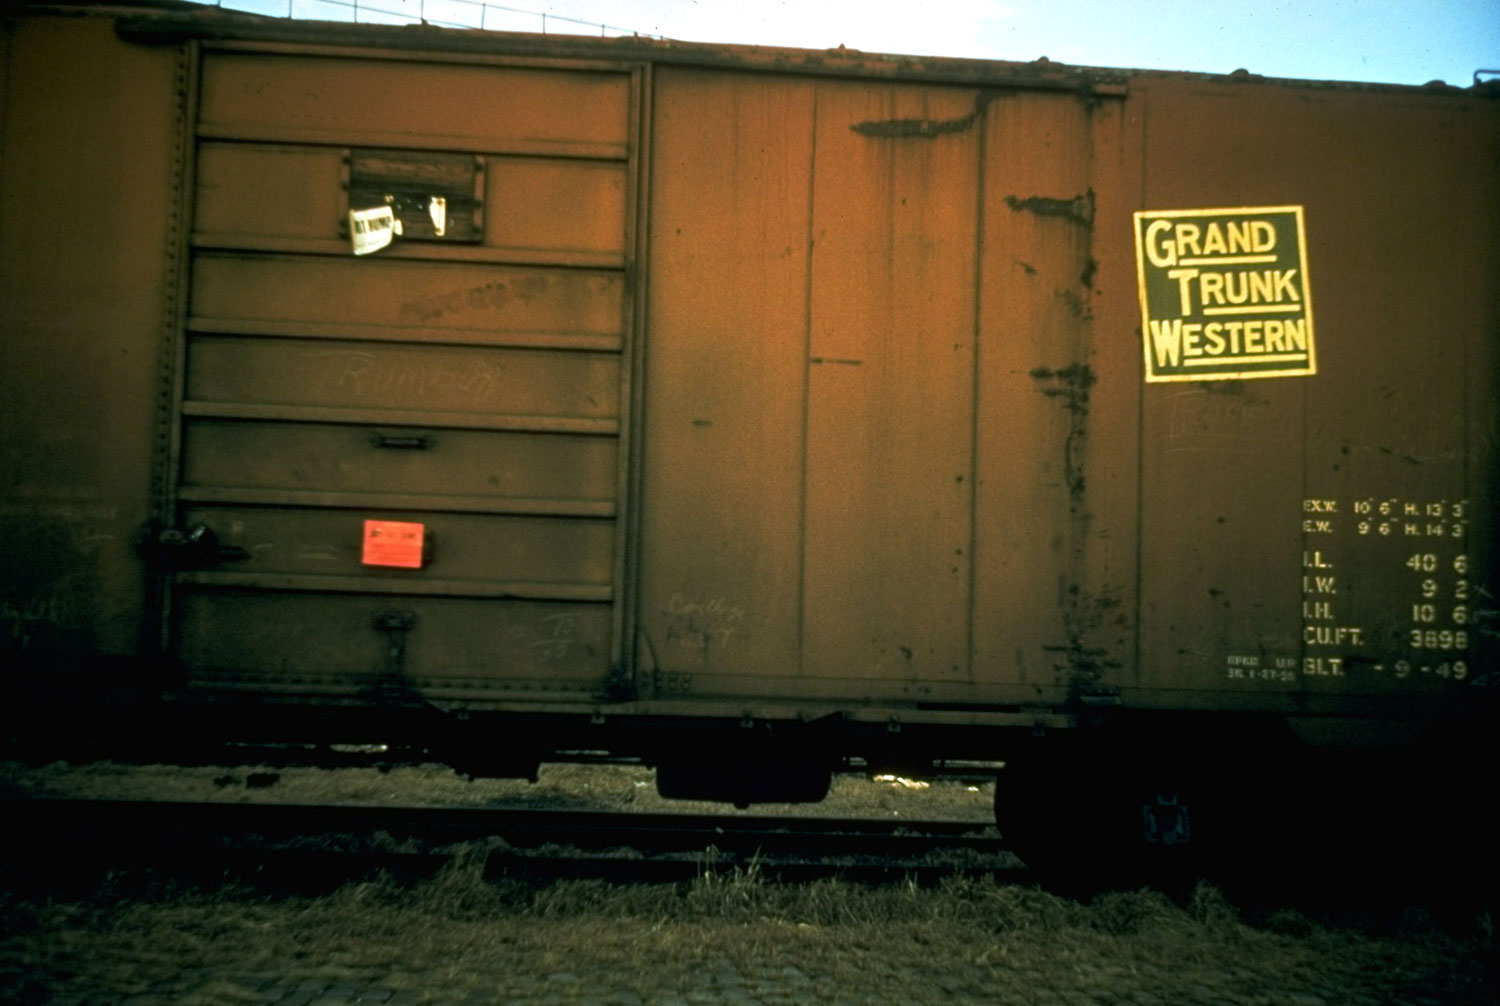 Walker Evans portrait of a railroad freight car, 1957.